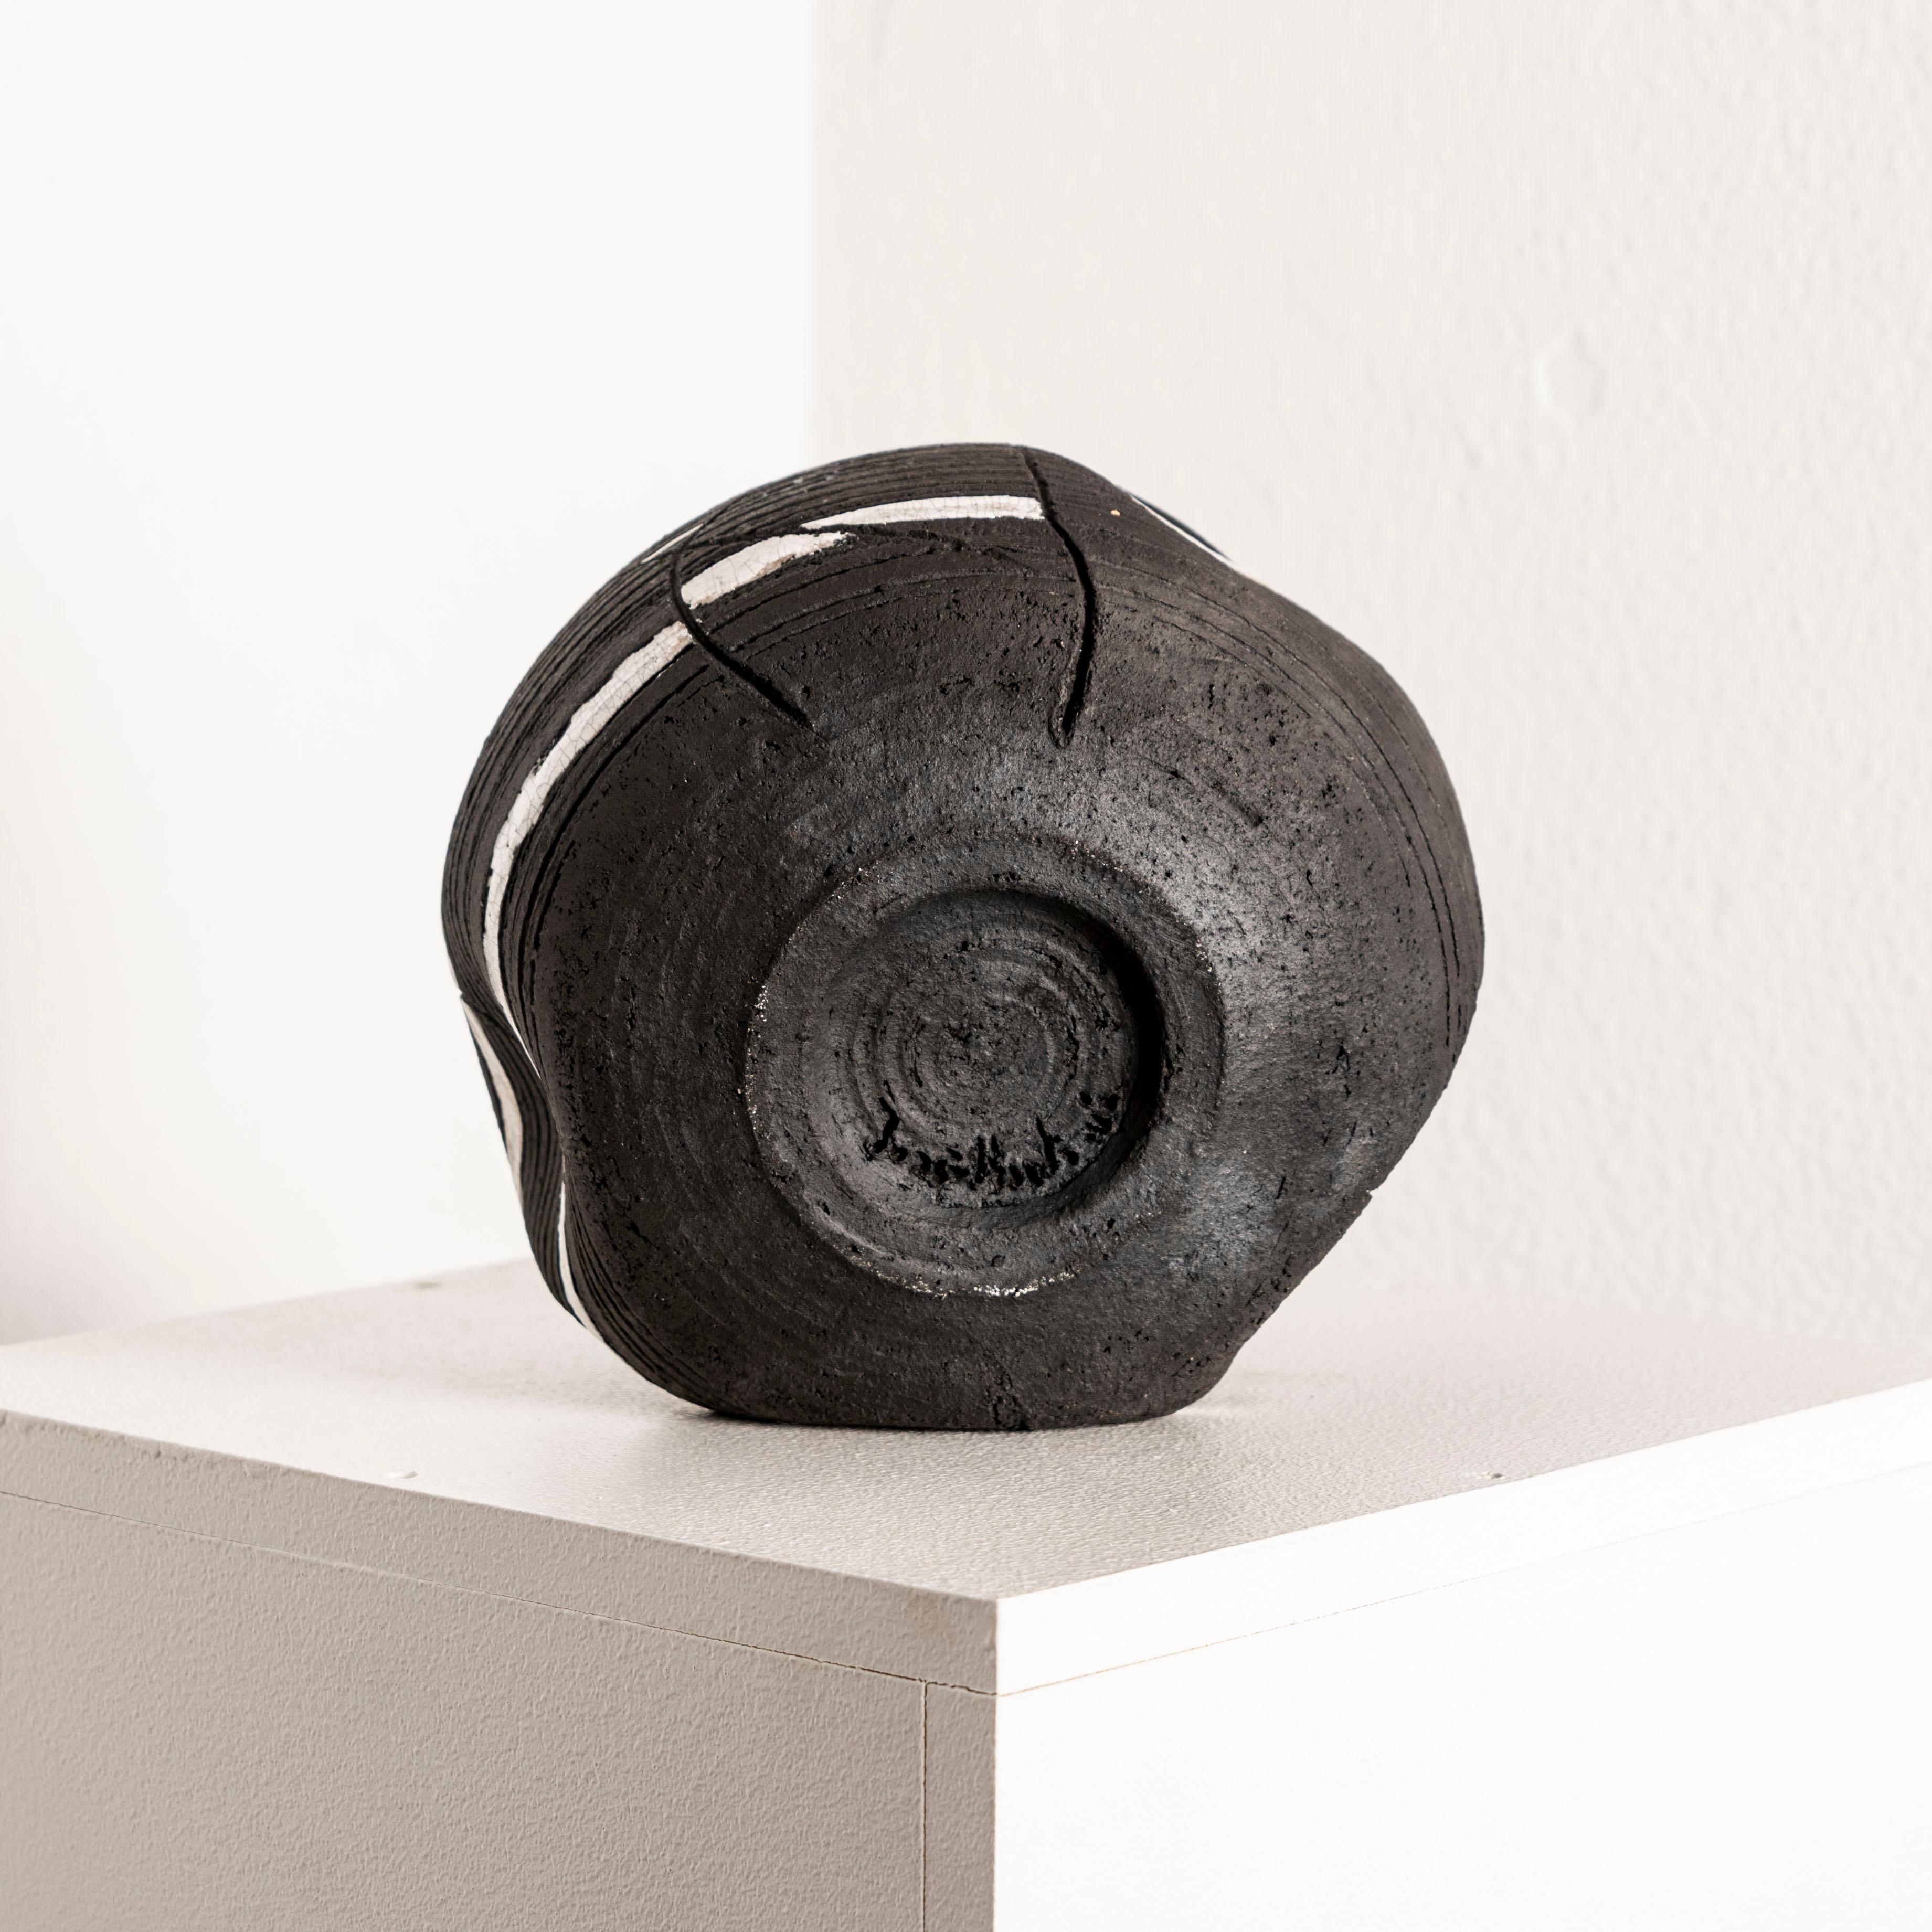 Die Investition in dieses schwarze Keramikgefäß mit weißer Glasur, das vom Künstler signiert ist, bietet eine einzigartige Gelegenheit, ein Stück zeitgenössischer Keramikkunst zu besitzen, das Eleganz und Schlichtheit nahtlos miteinander verbindet.